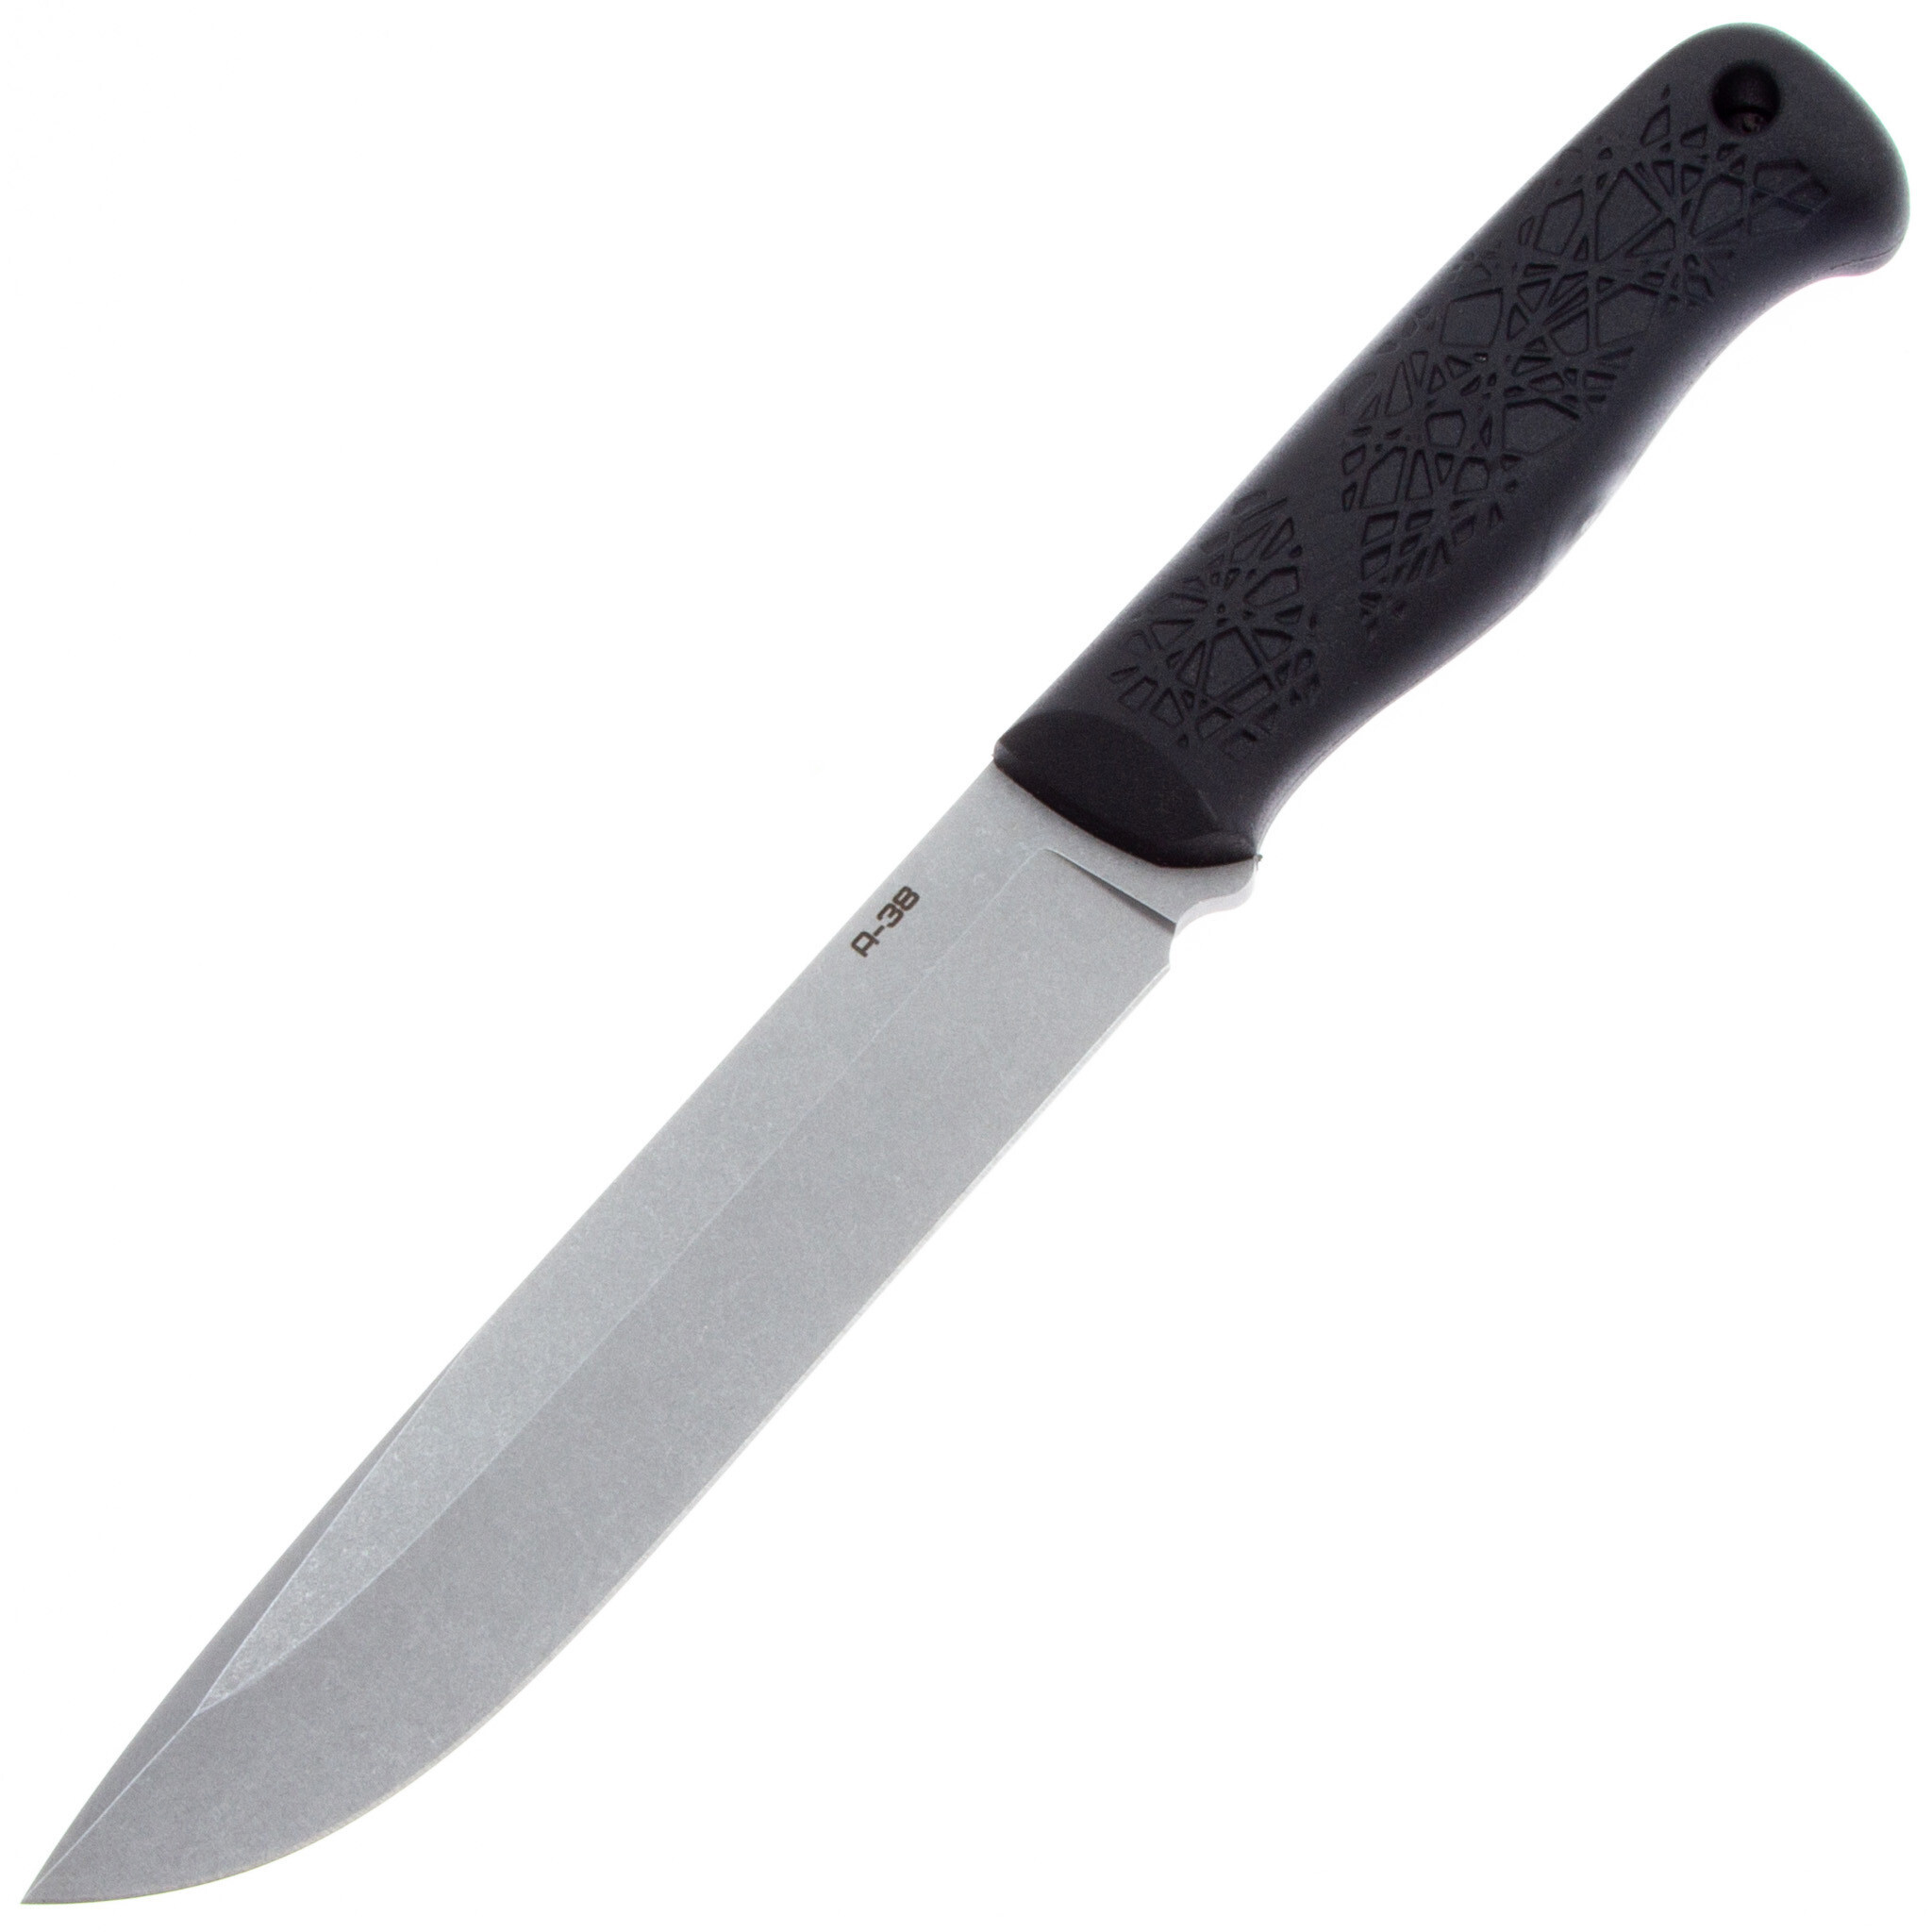  Нож A-38 Mr.Blade, сталь 95Х18, рукоять эластрон